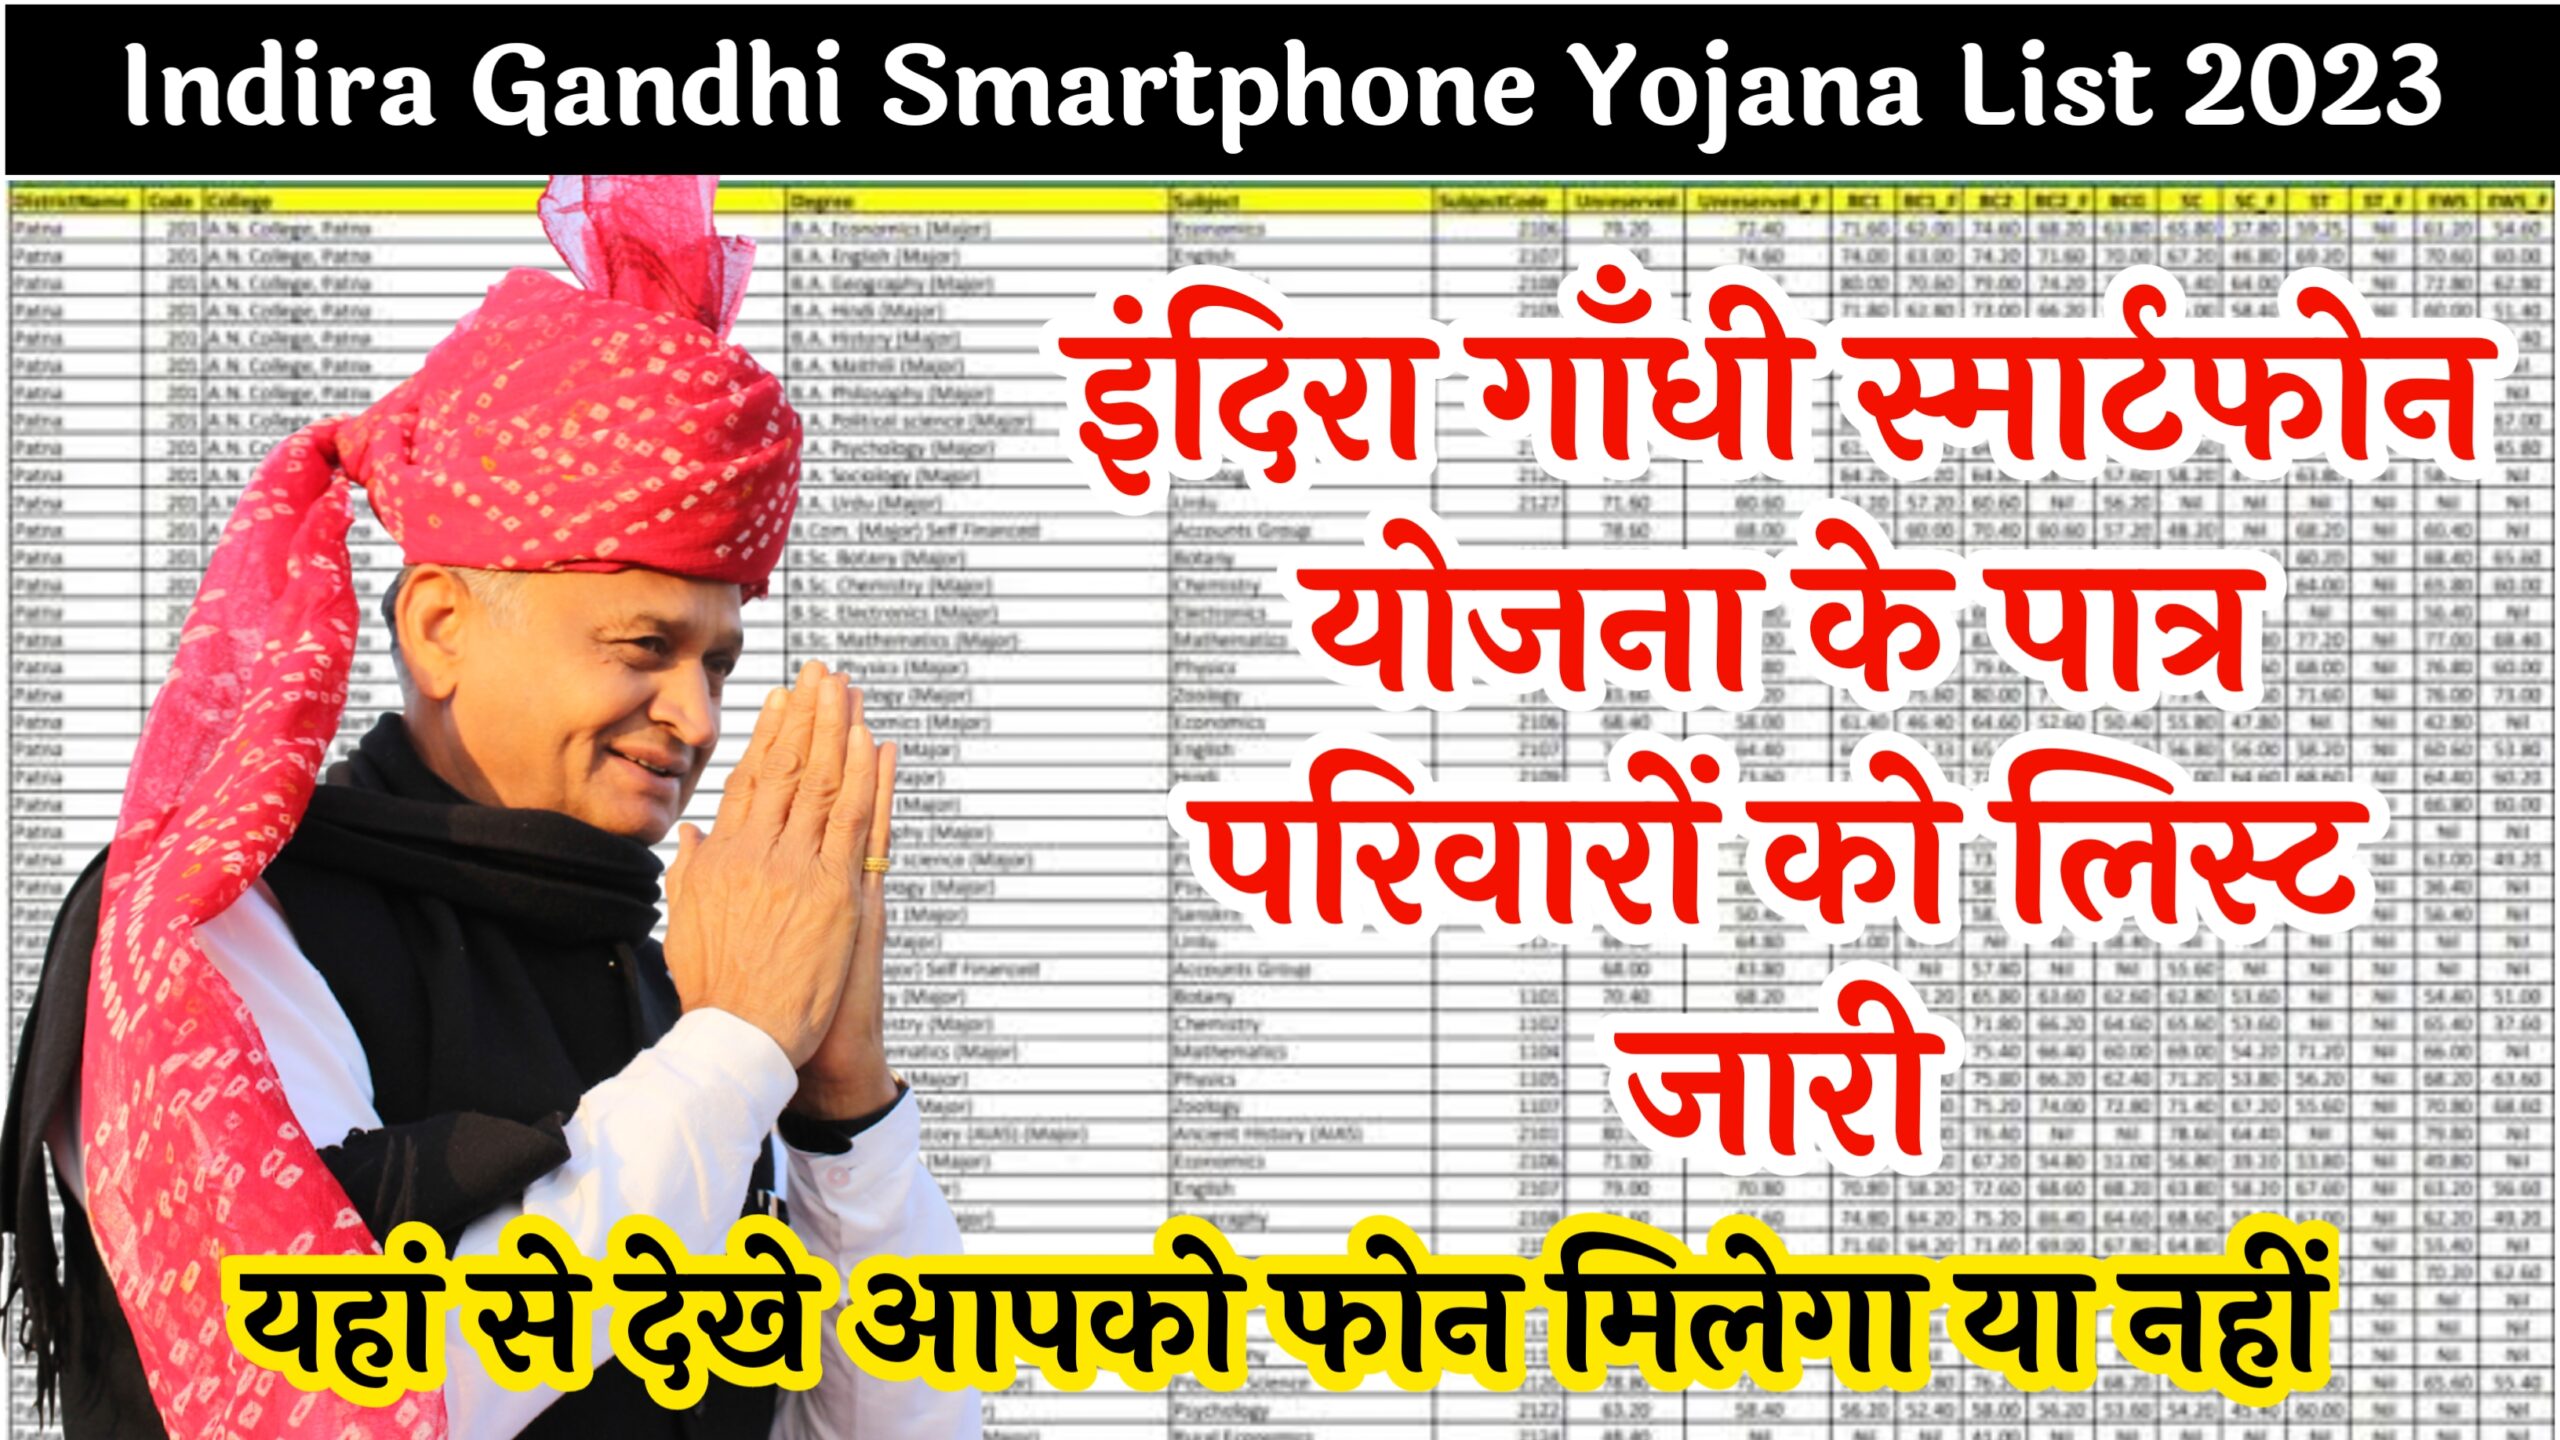 Indira Gandhi Smartphone Yojana List 2023